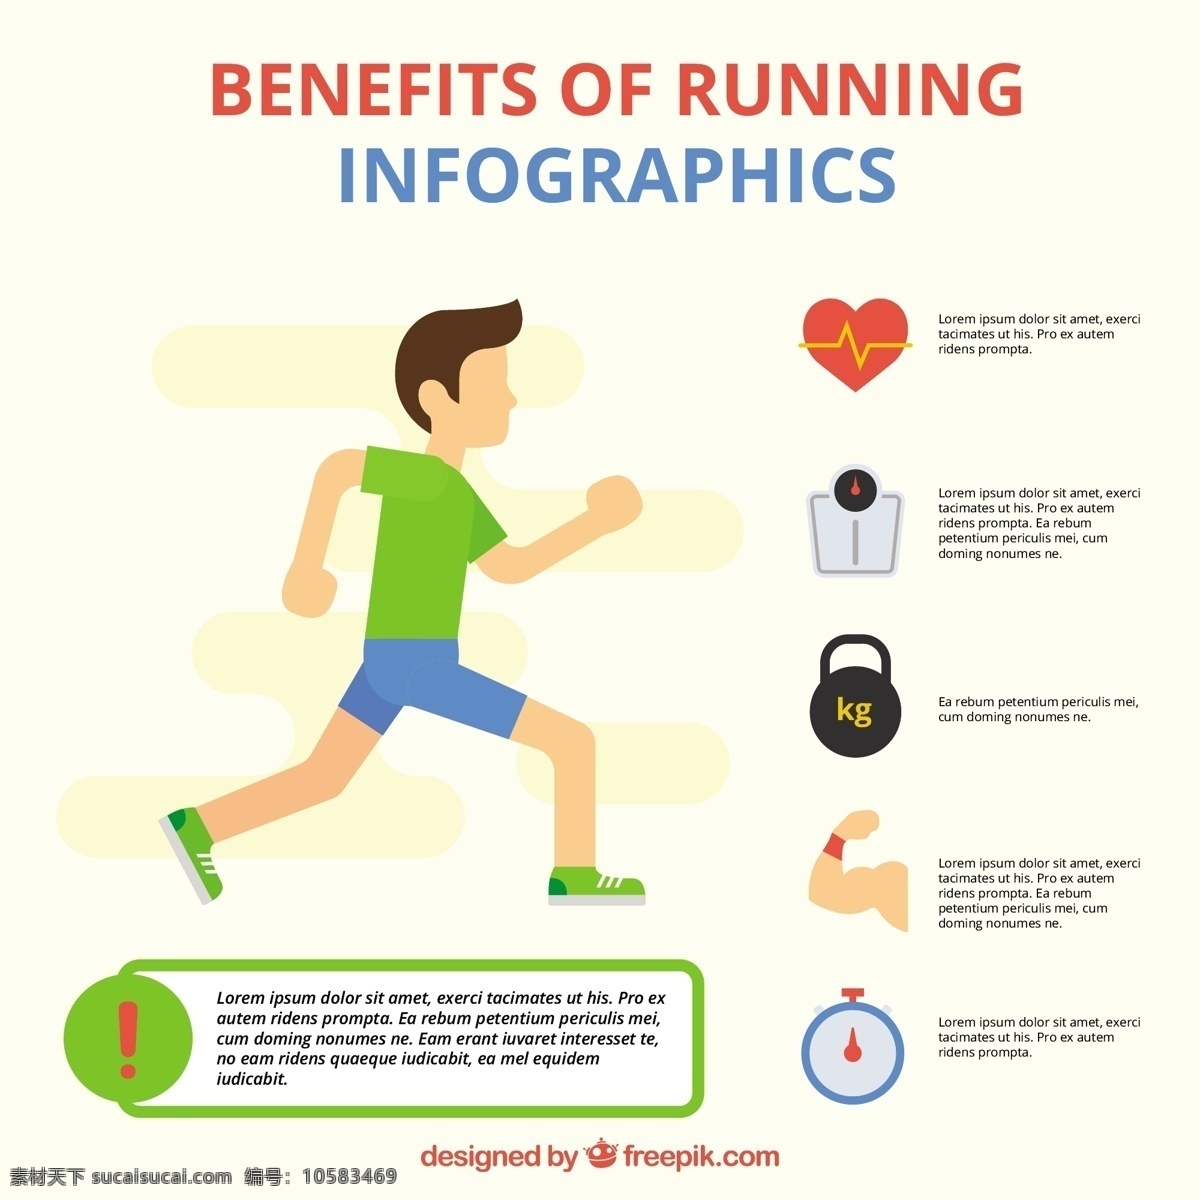 年轻人 图表 元素 运行 模板 人 运动 健身 健康 营销 图形 跑步 过程 图表模板 数据元素 信息 健康信息